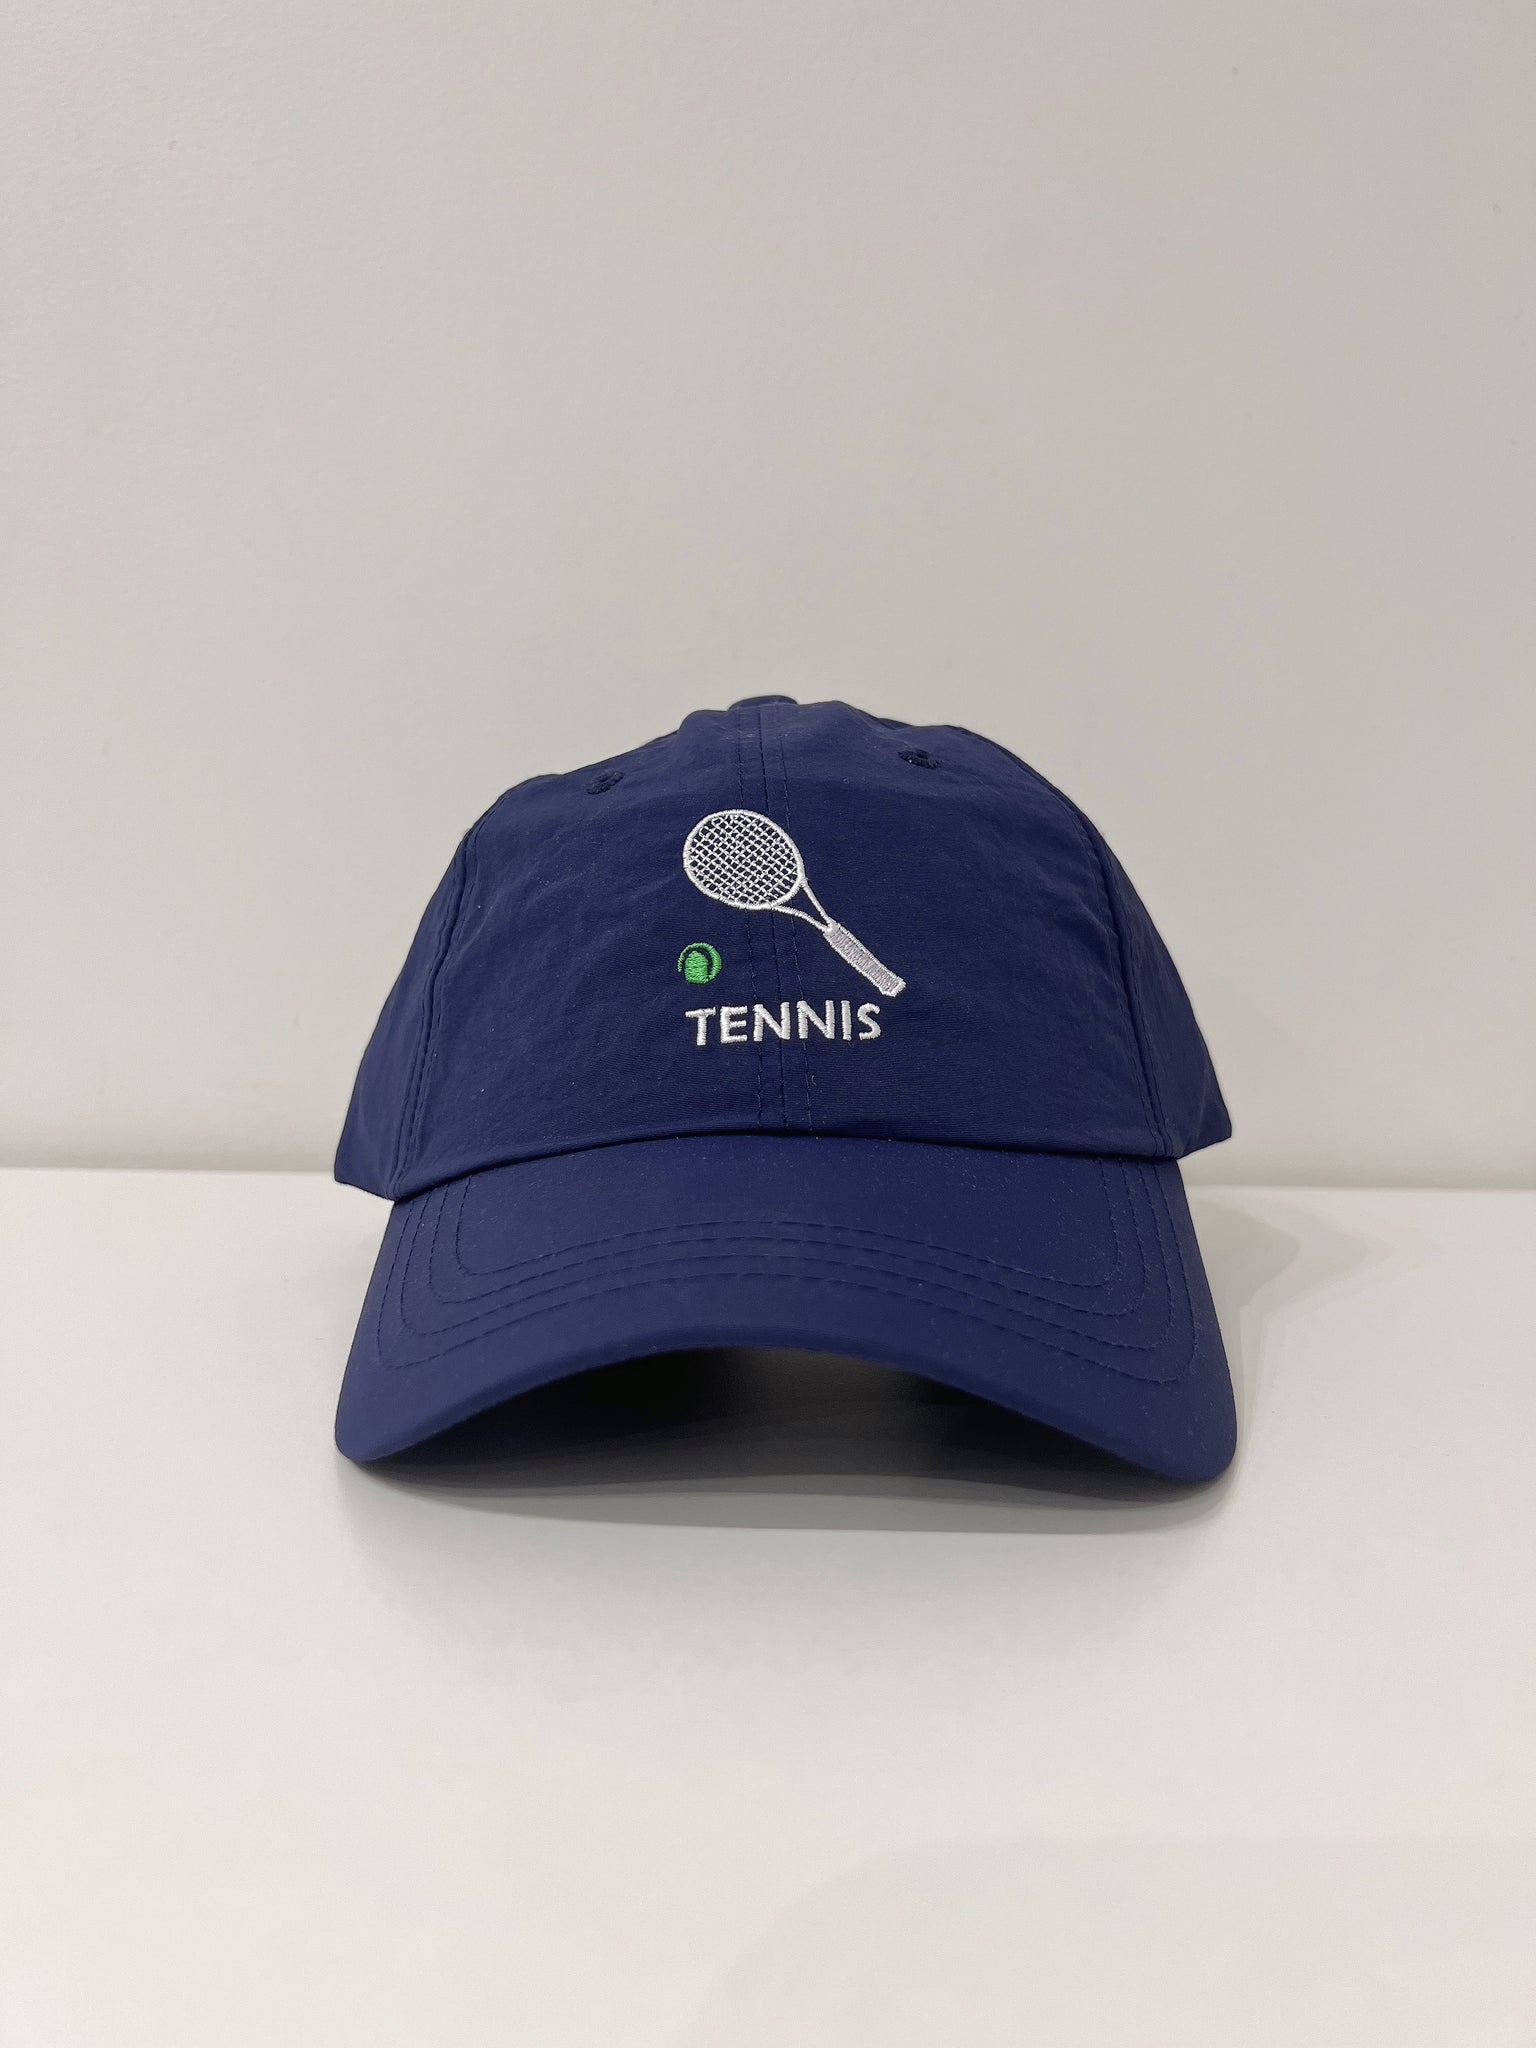 LUV Tennis ball cap